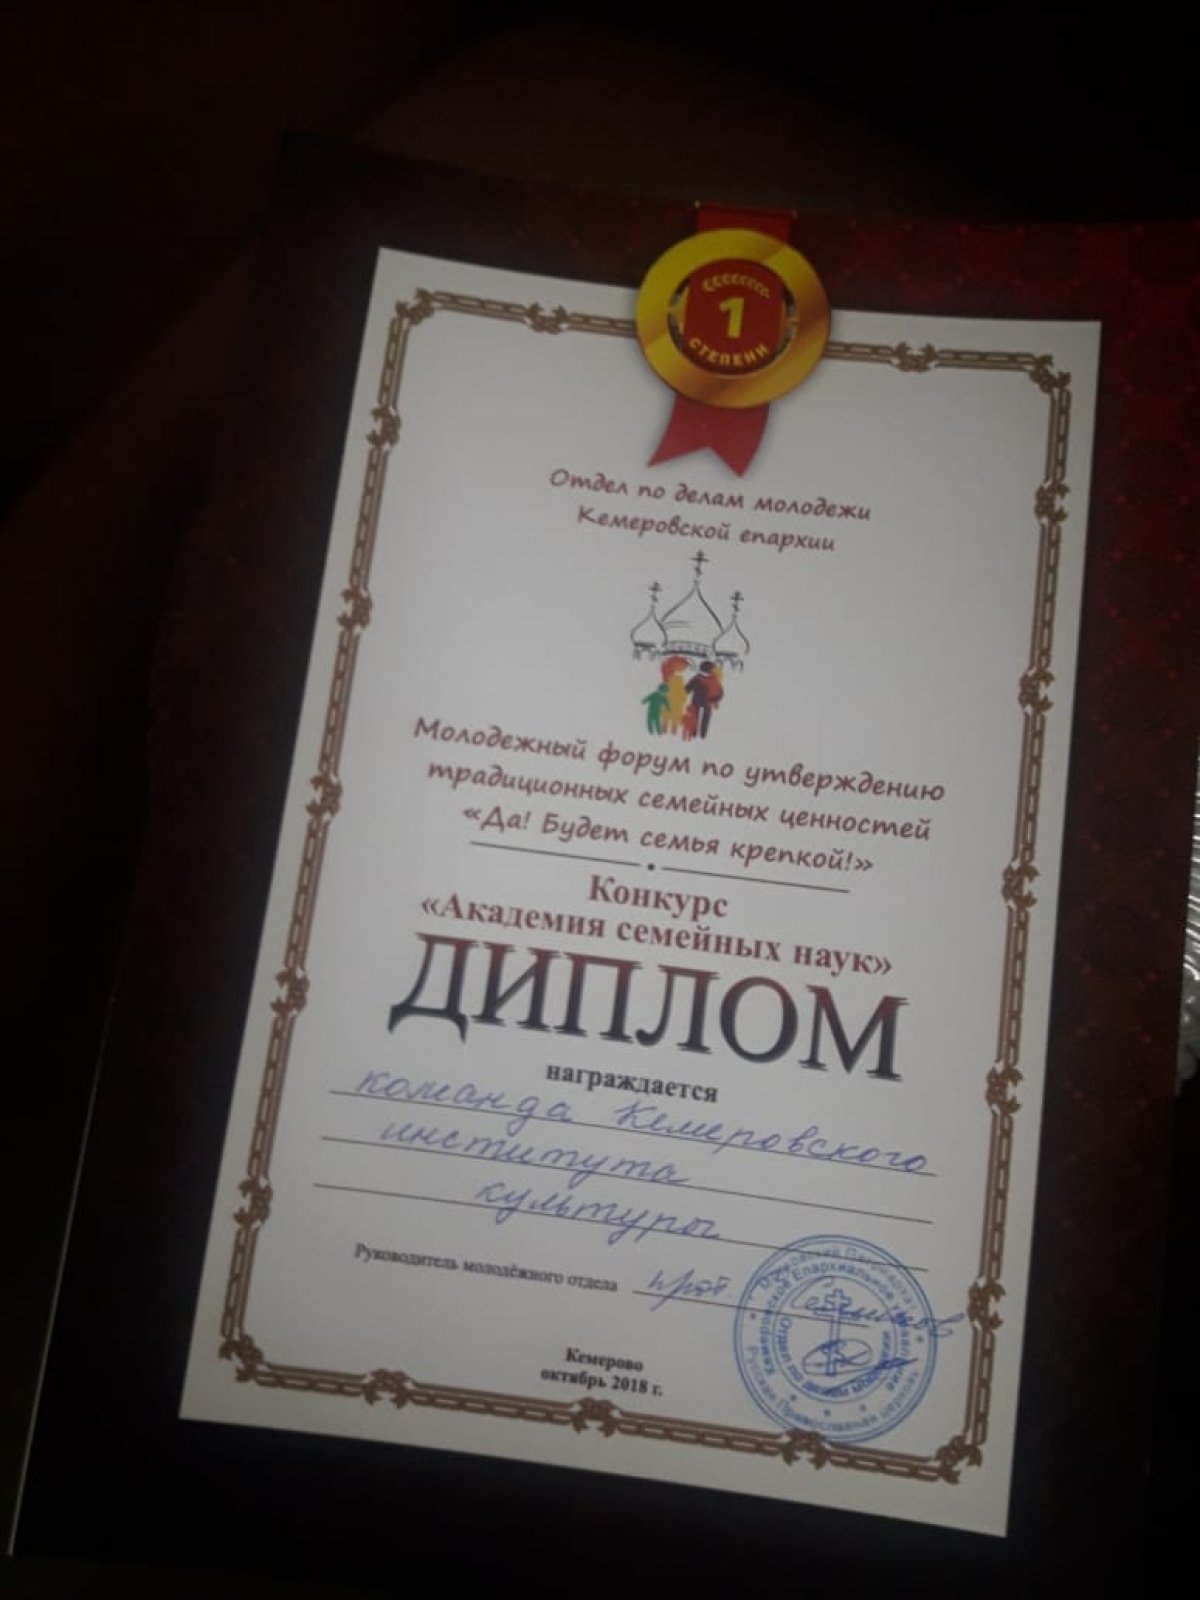 Команда КемГИК – победители II конкурса «Академия семейных наук»